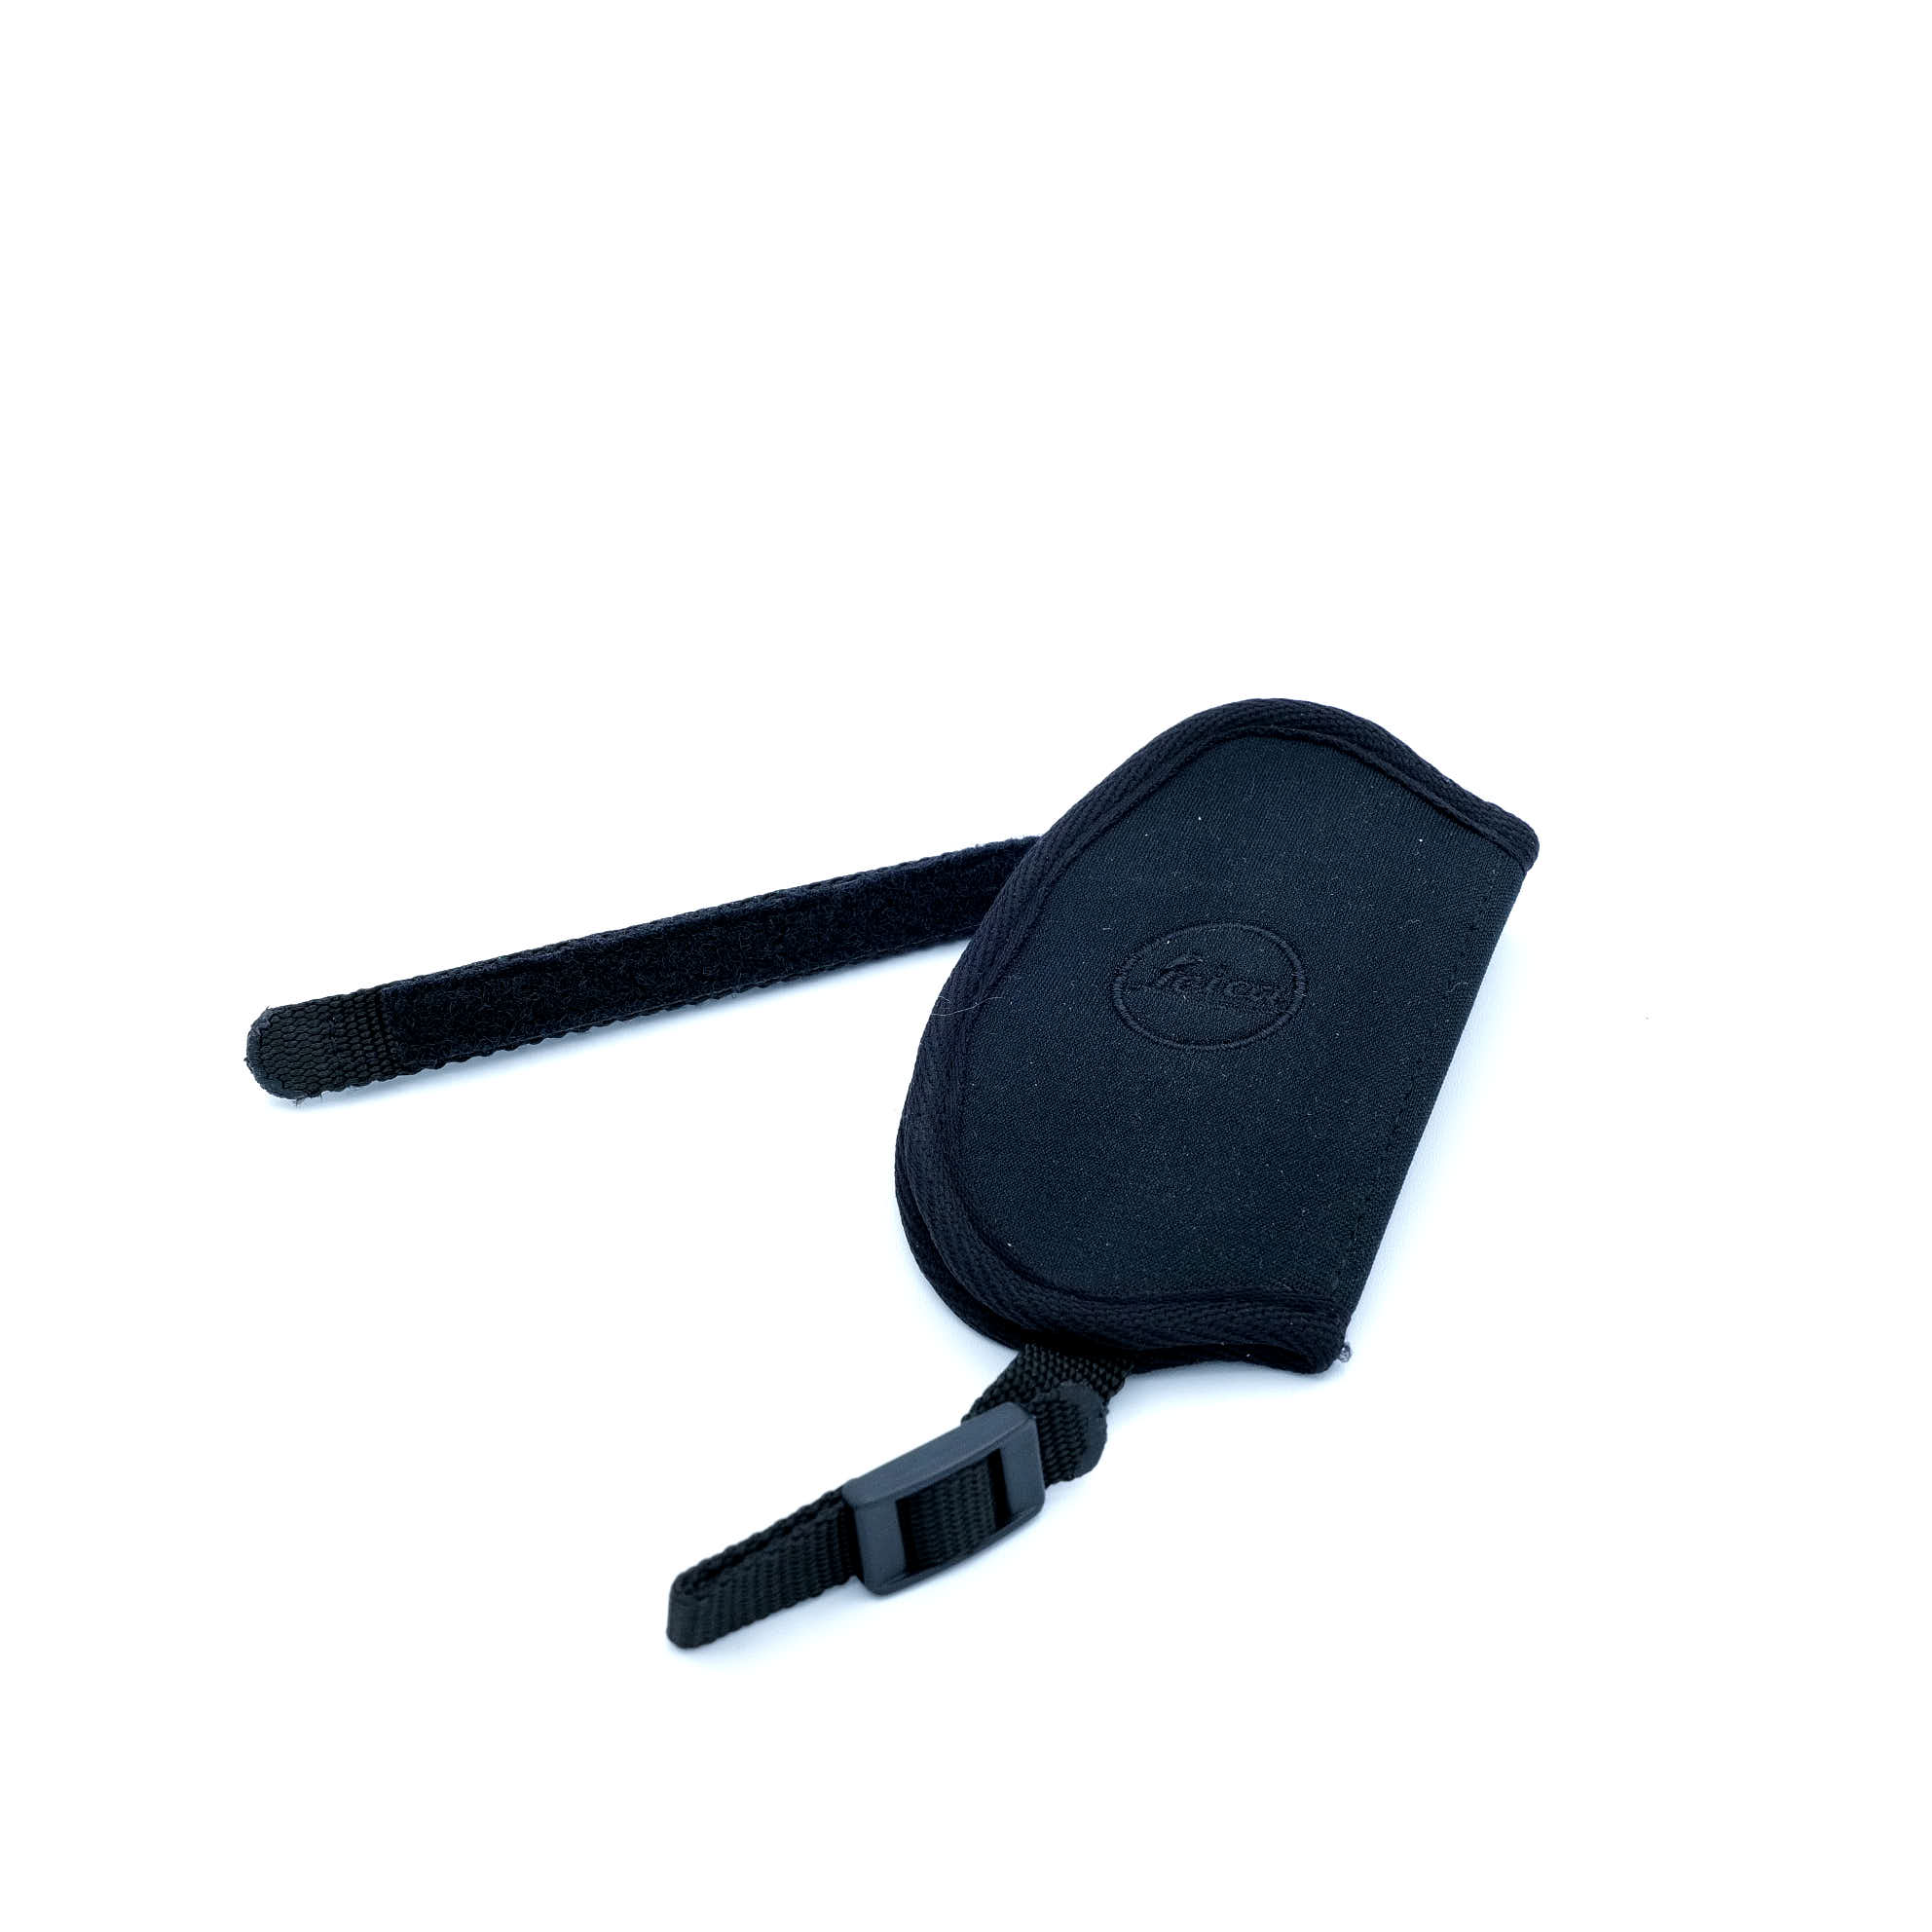 Leica fascia ergonomica per impugnatura S/SL 